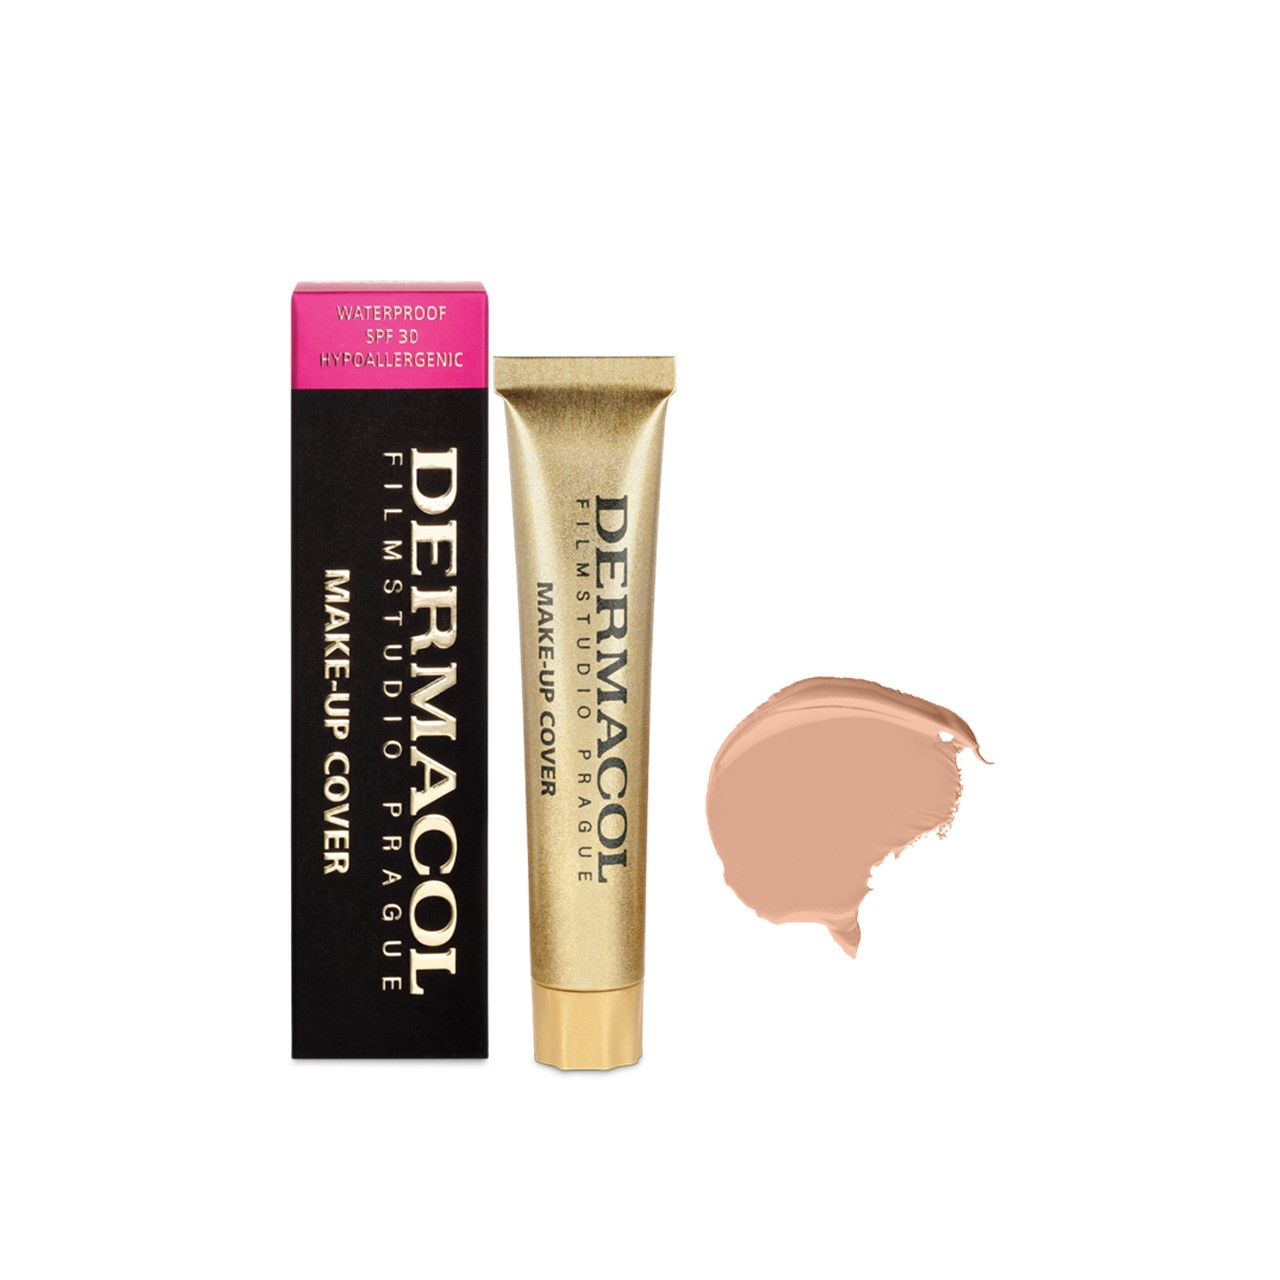 Dermacol Make-Up Cover Foundation SPF30 211 30g (1.06oz)